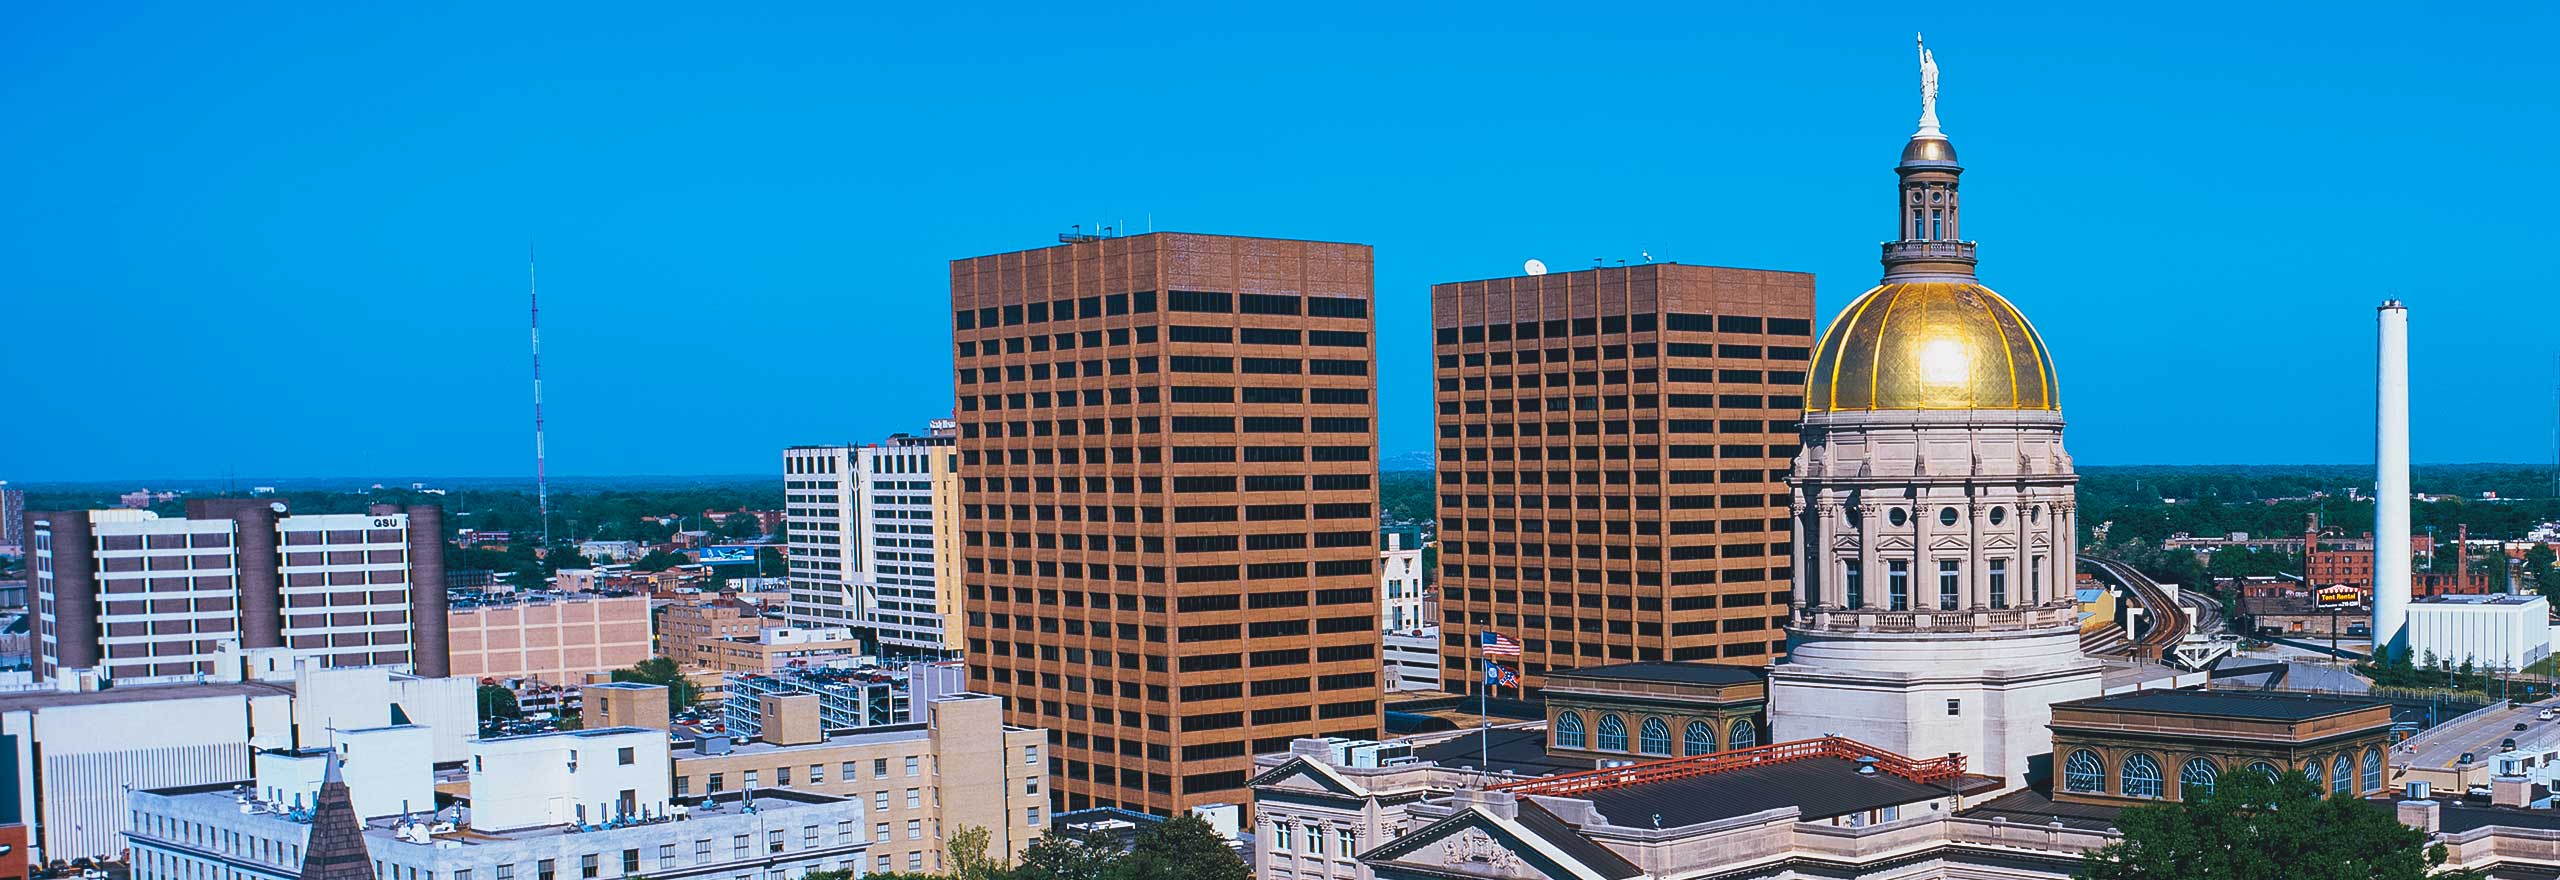 Le Capitole et silhouette des immeubles de jour